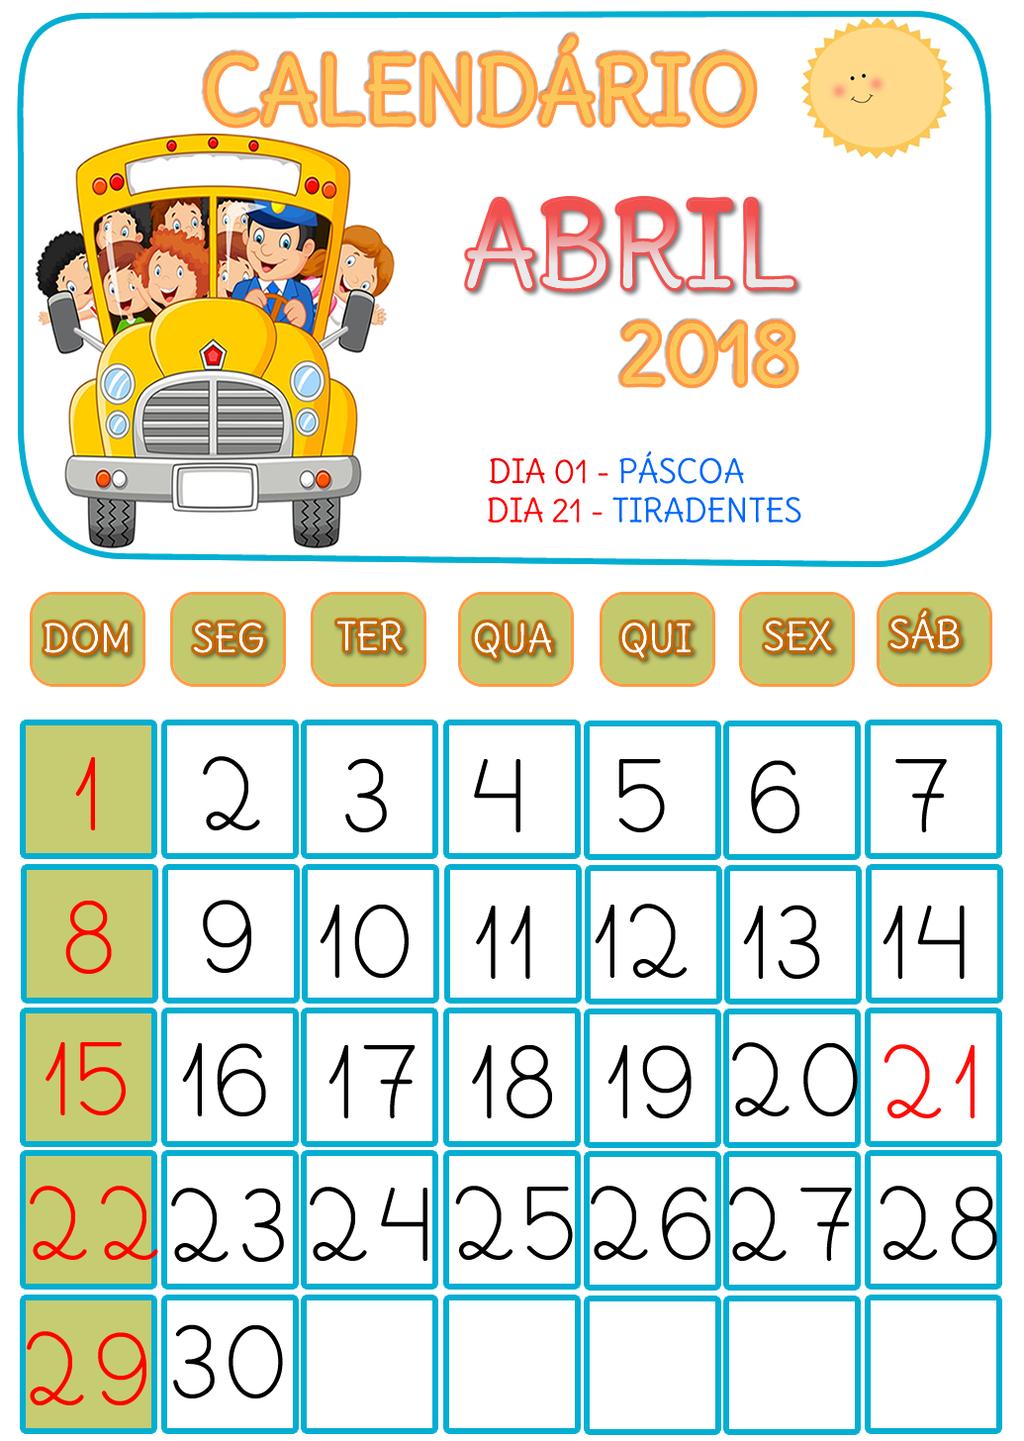 1) Circule o ano em que estamos; 2) Escreva dentro do retângulo o nome do mês representado nesse calendário; 3) Quantos dias há nesse mês?